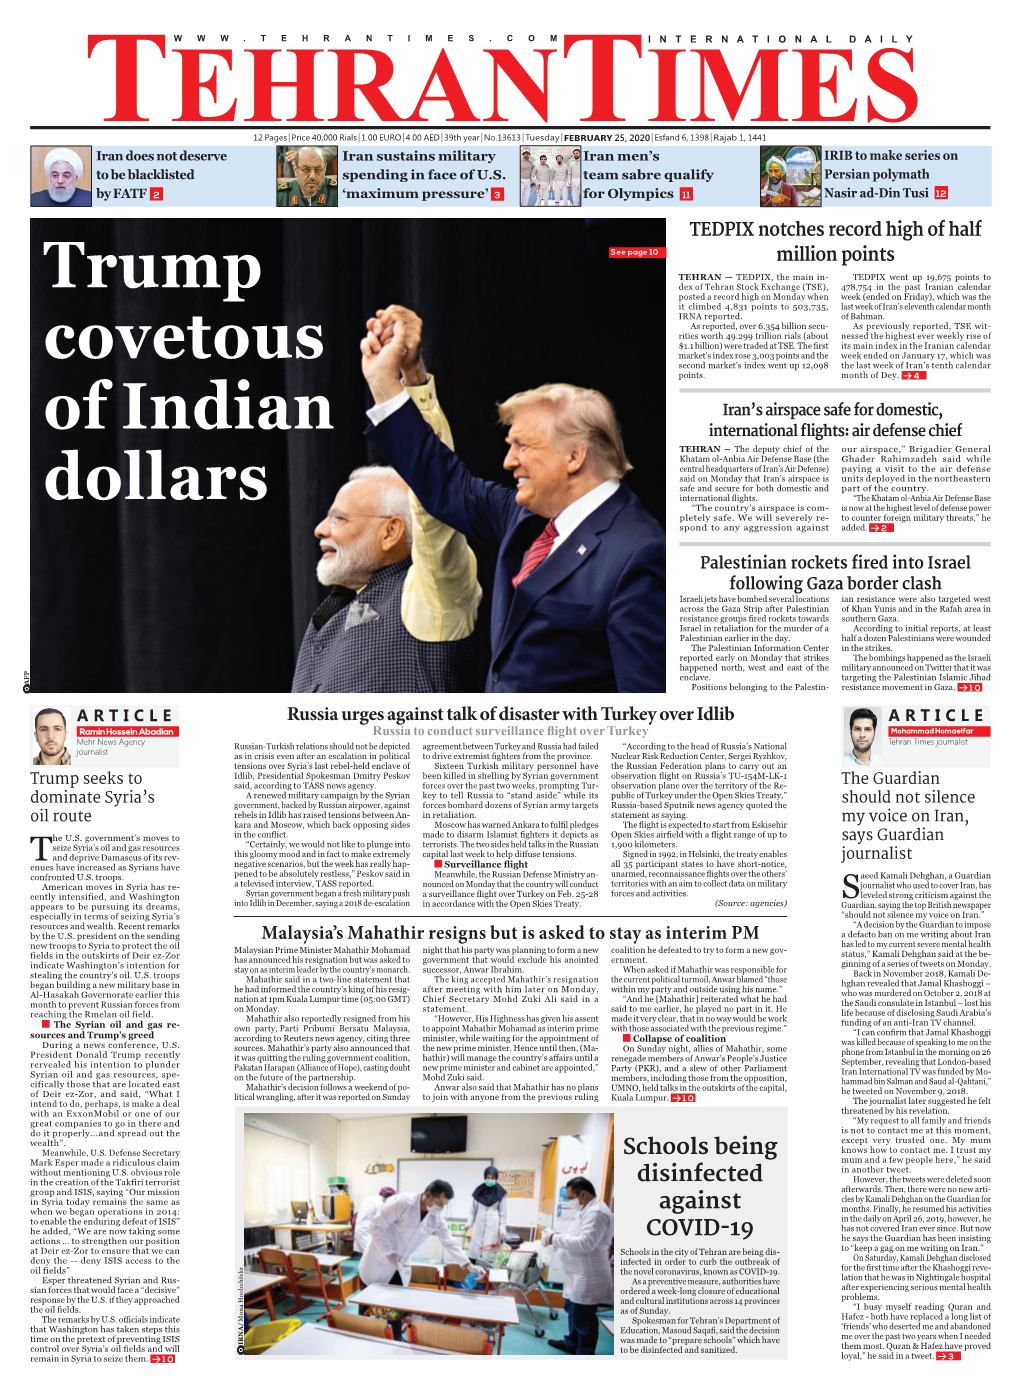 Trump Covetous of Indian Dollars